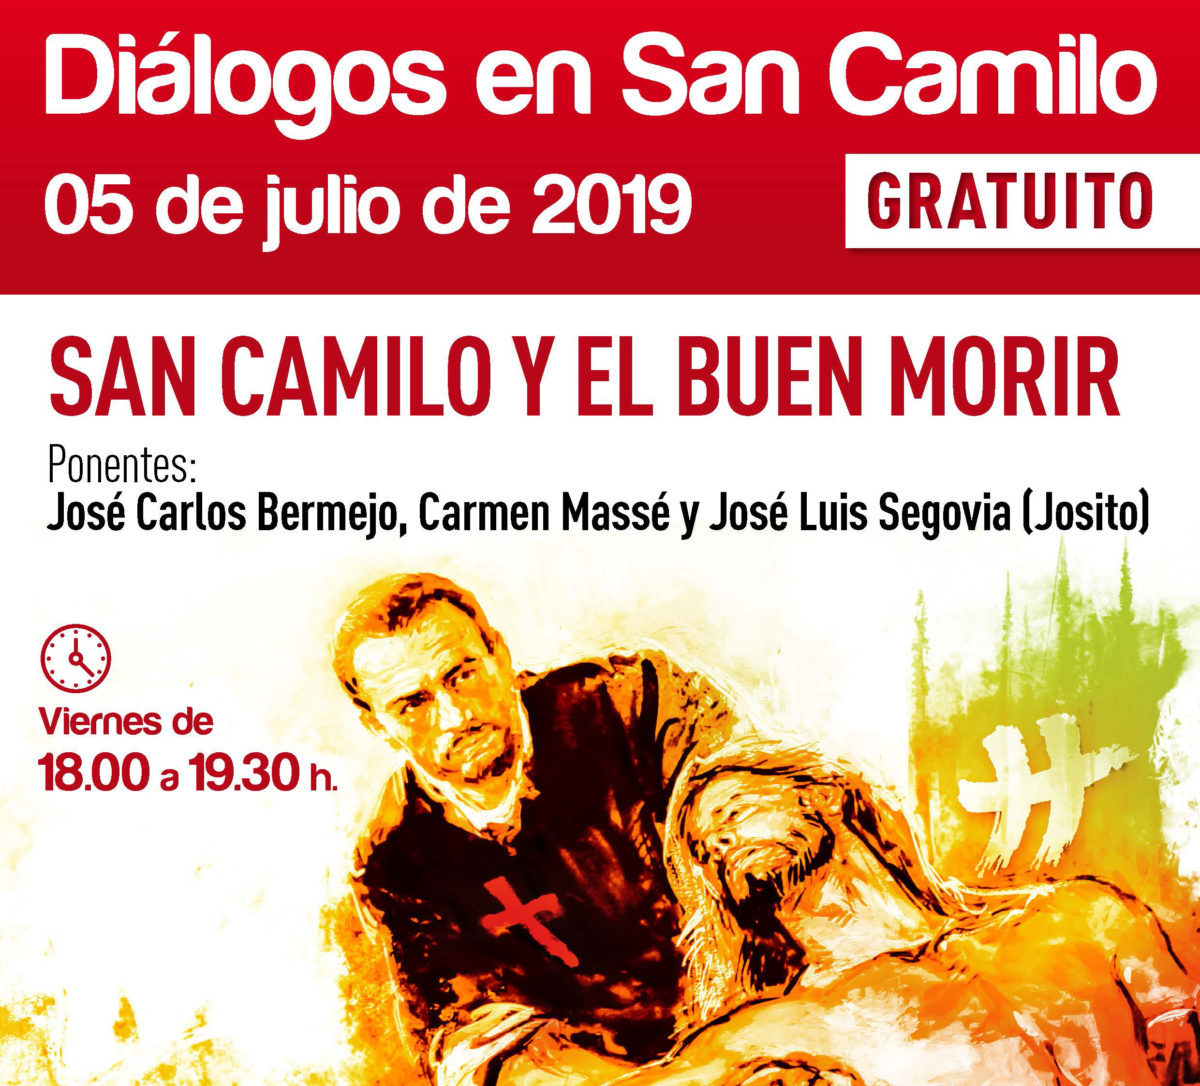 San Camilo y el buen morir: 5 julio